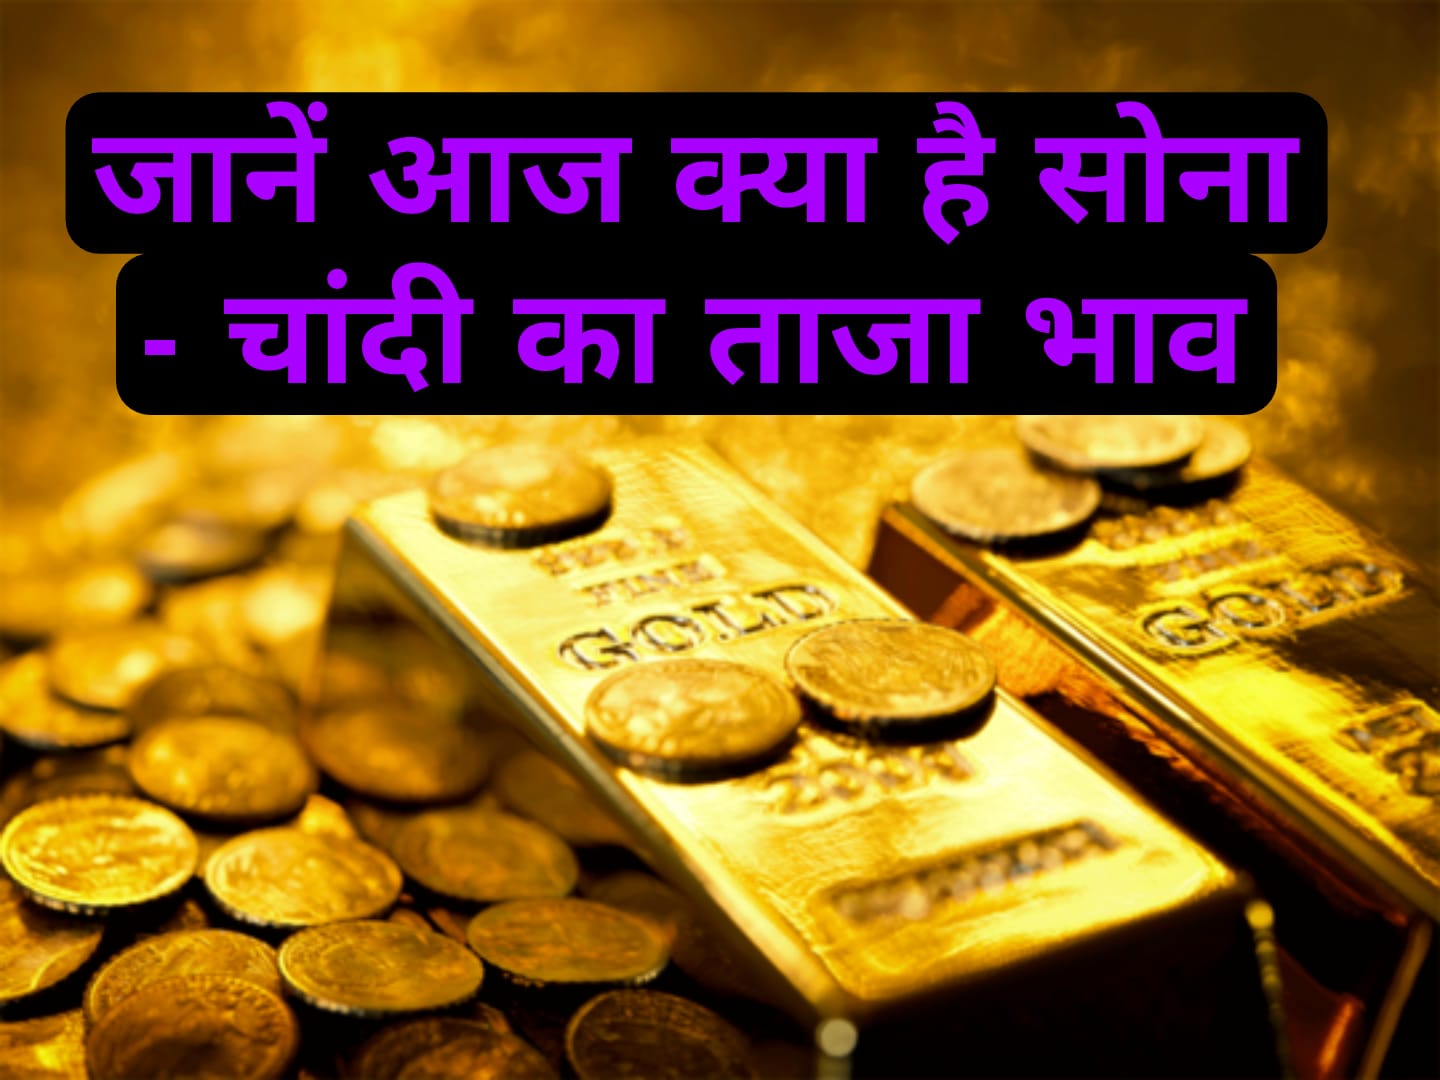 Today’s gold and silver rate : थोड़ा और घटा सोना-चांदी का दाम, कल बढ़ सकता है